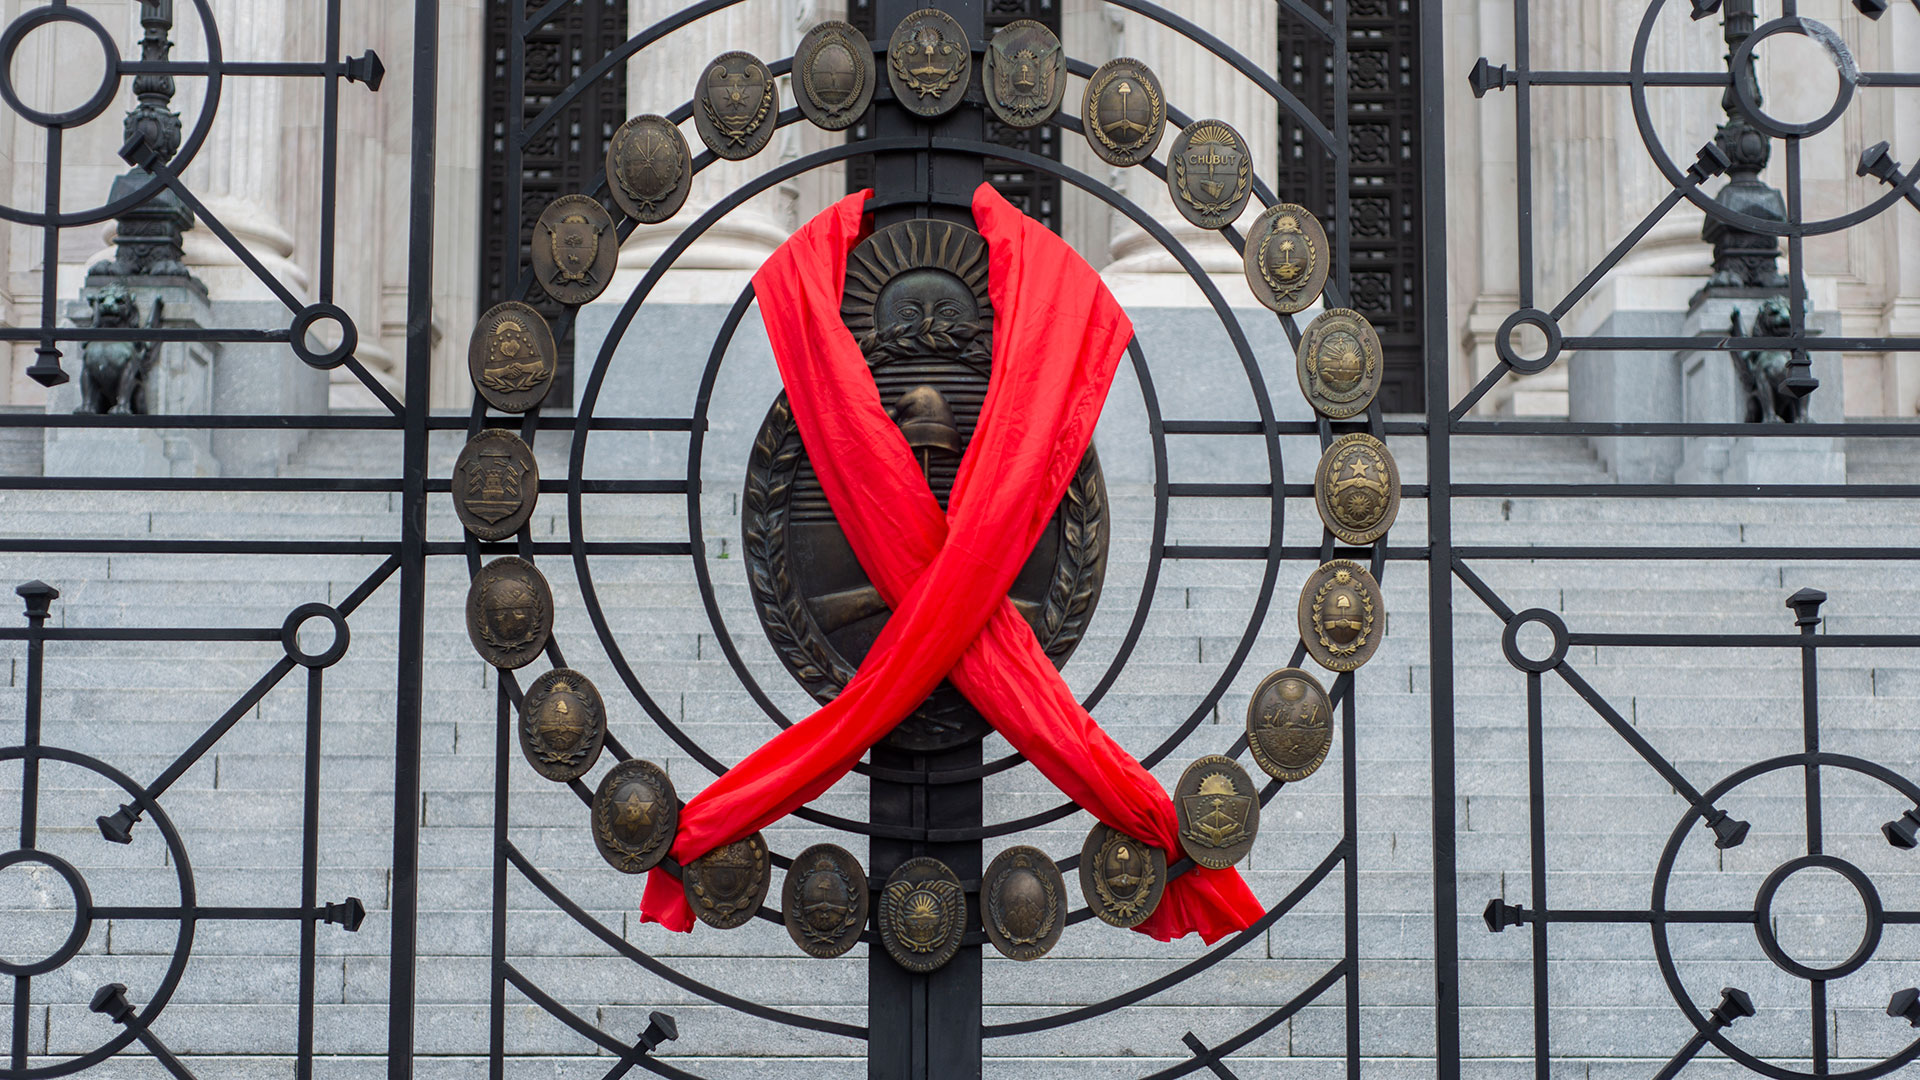 Ley Nacional de VIH, Hepatitis Virales, Tuberculosis e Infecciones de Transmisión Sexual que asegura el tratamiento antirretroviral de forma gratuita